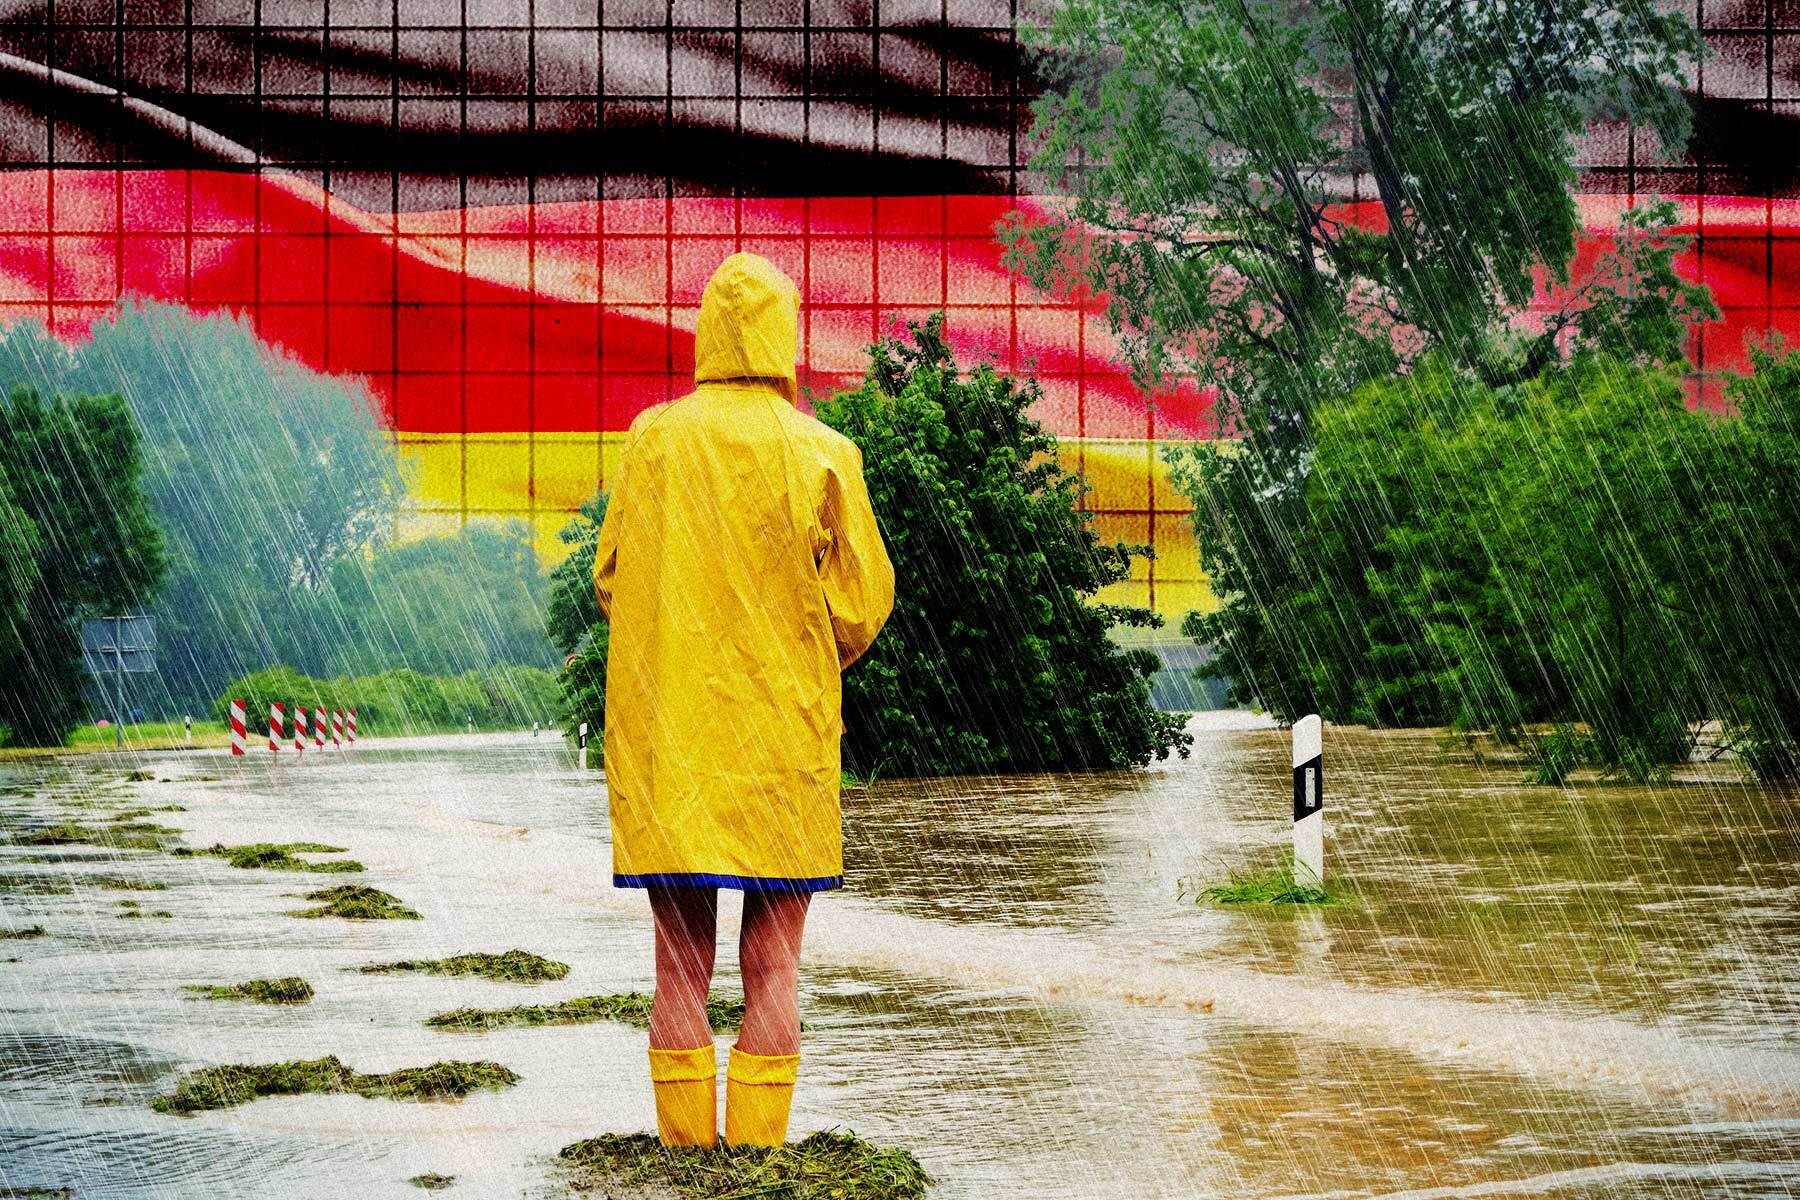 die stimmung in deutschland ist so schlecht wie nie, warnen meinungsforscher – warum wir mehr optimisten brauchen